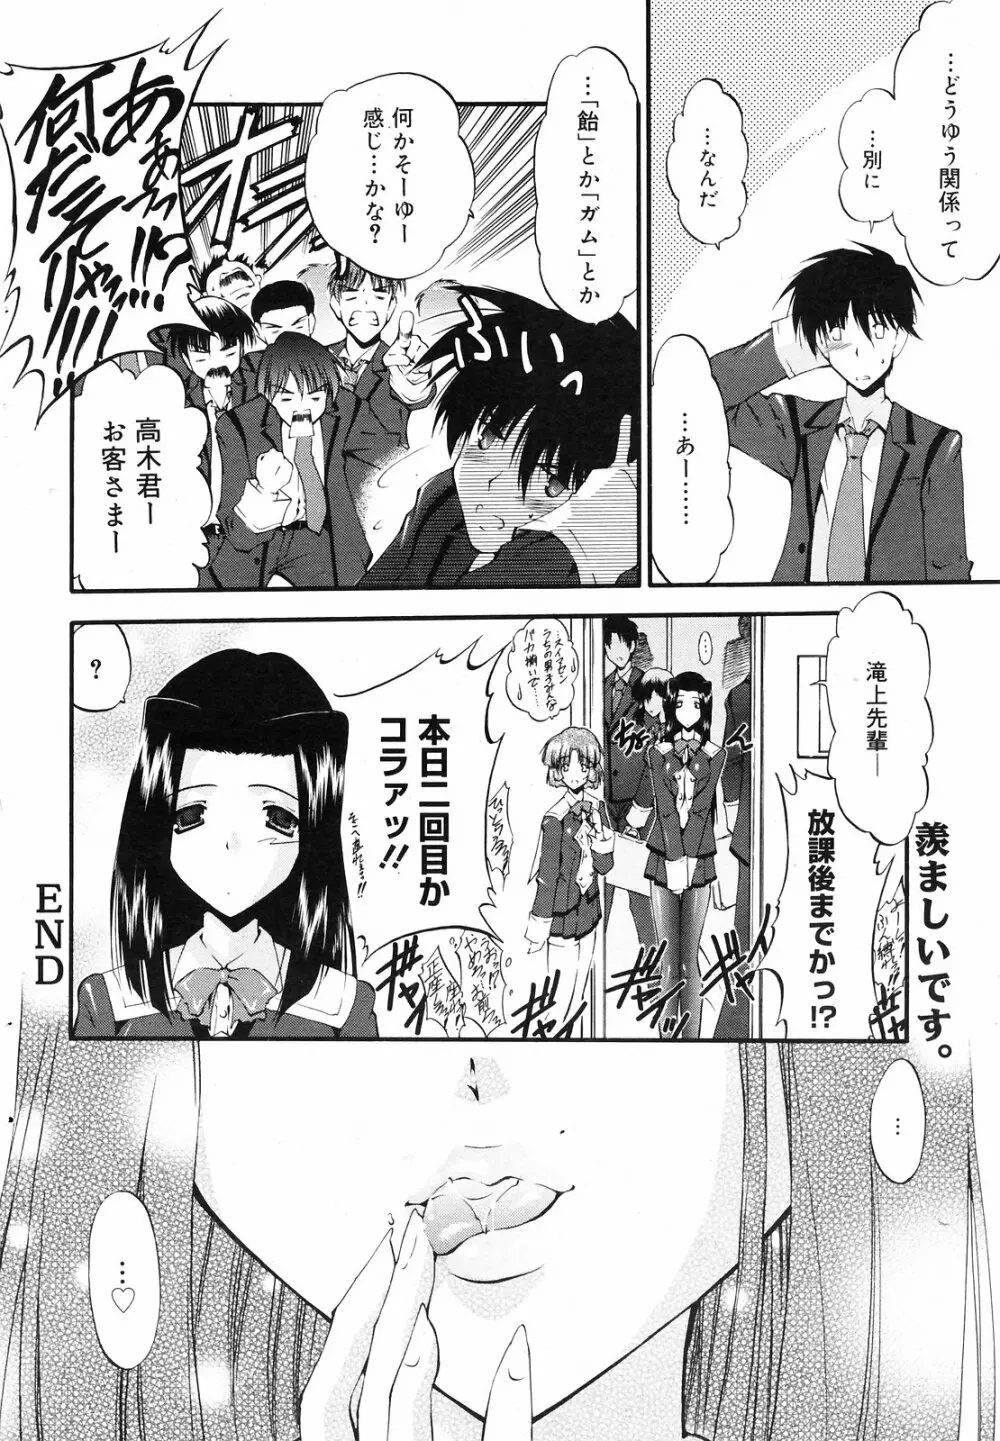 Manga Bangaichi 2008-09 74ページ